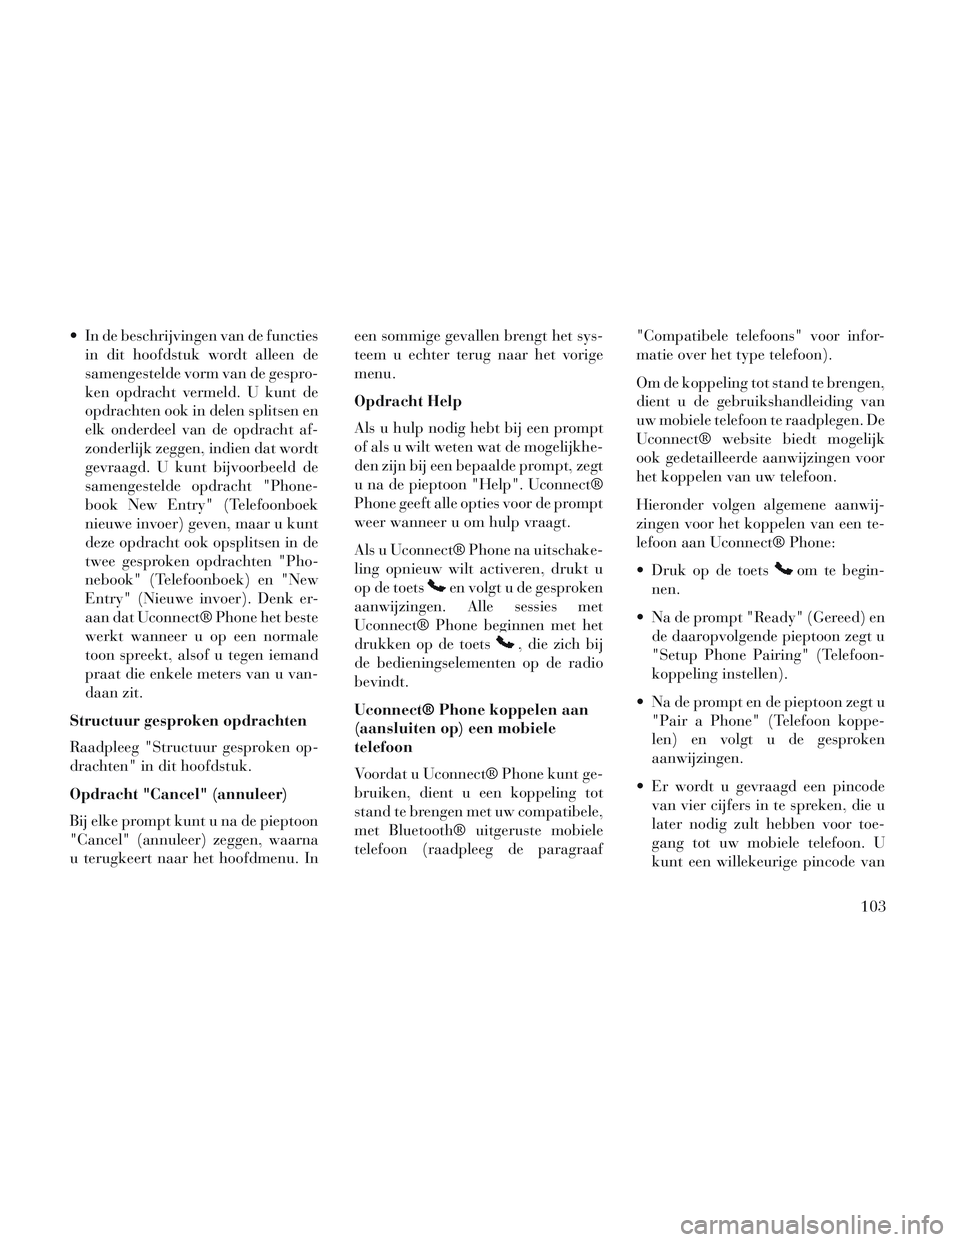 Lancia Voyager 2014  Instructieboek (in Dutch)  In de beschrijvingen van de functiesin dit hoofdstuk wordt alleen de
samengestelde vorm van de gespro-
ken opdracht vermeld. U kunt de
opdrachten ook in delen splitsen en
elk onderdeel van de opdrach